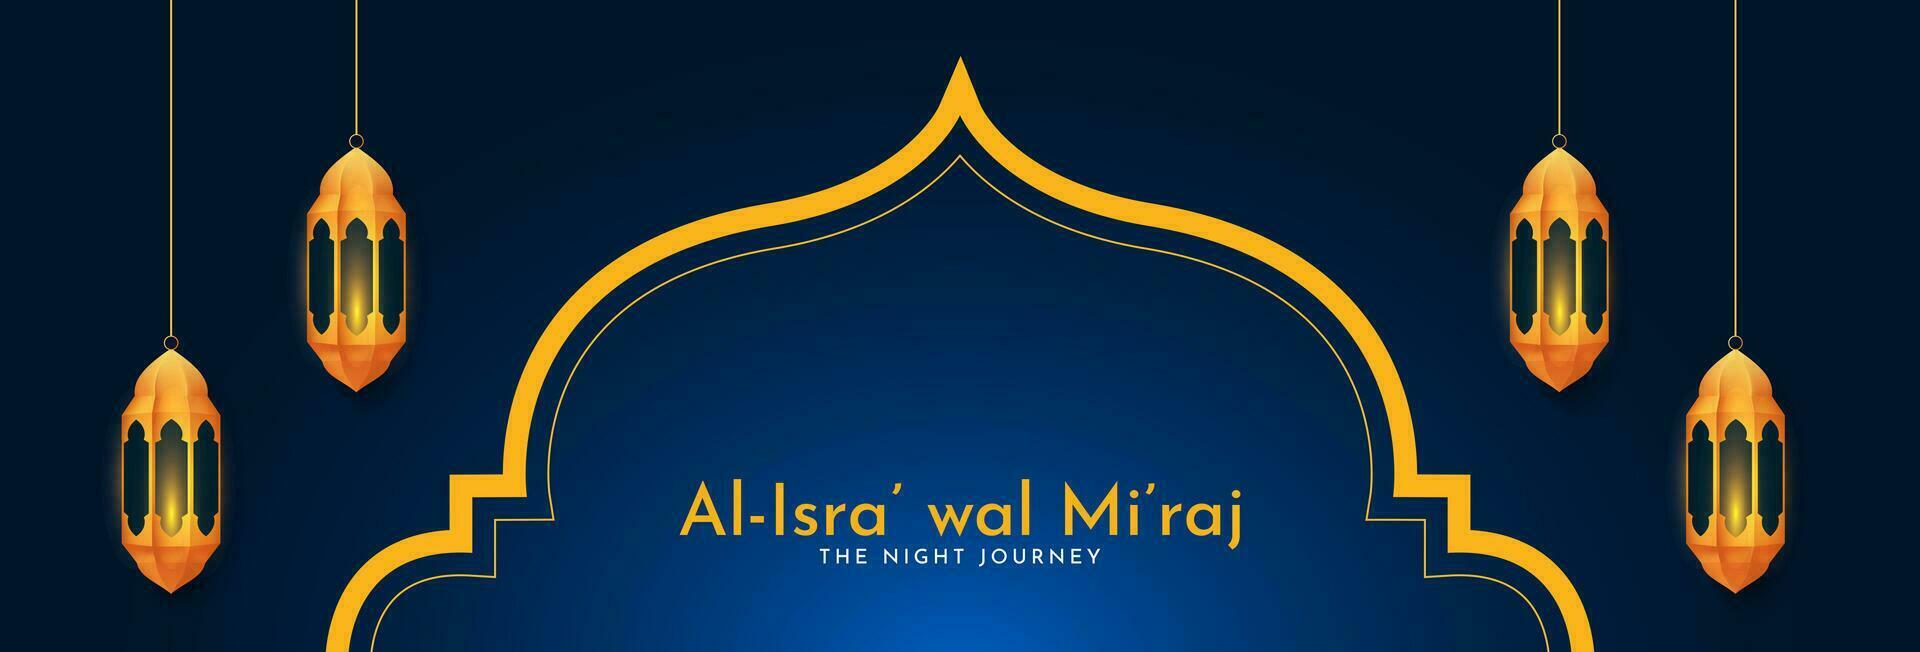 al-isra' wal mi'raj nuit périple de le prophète mahomet. islamique Contexte conception. bannière, affiche, carte modèle. vecteur illustration